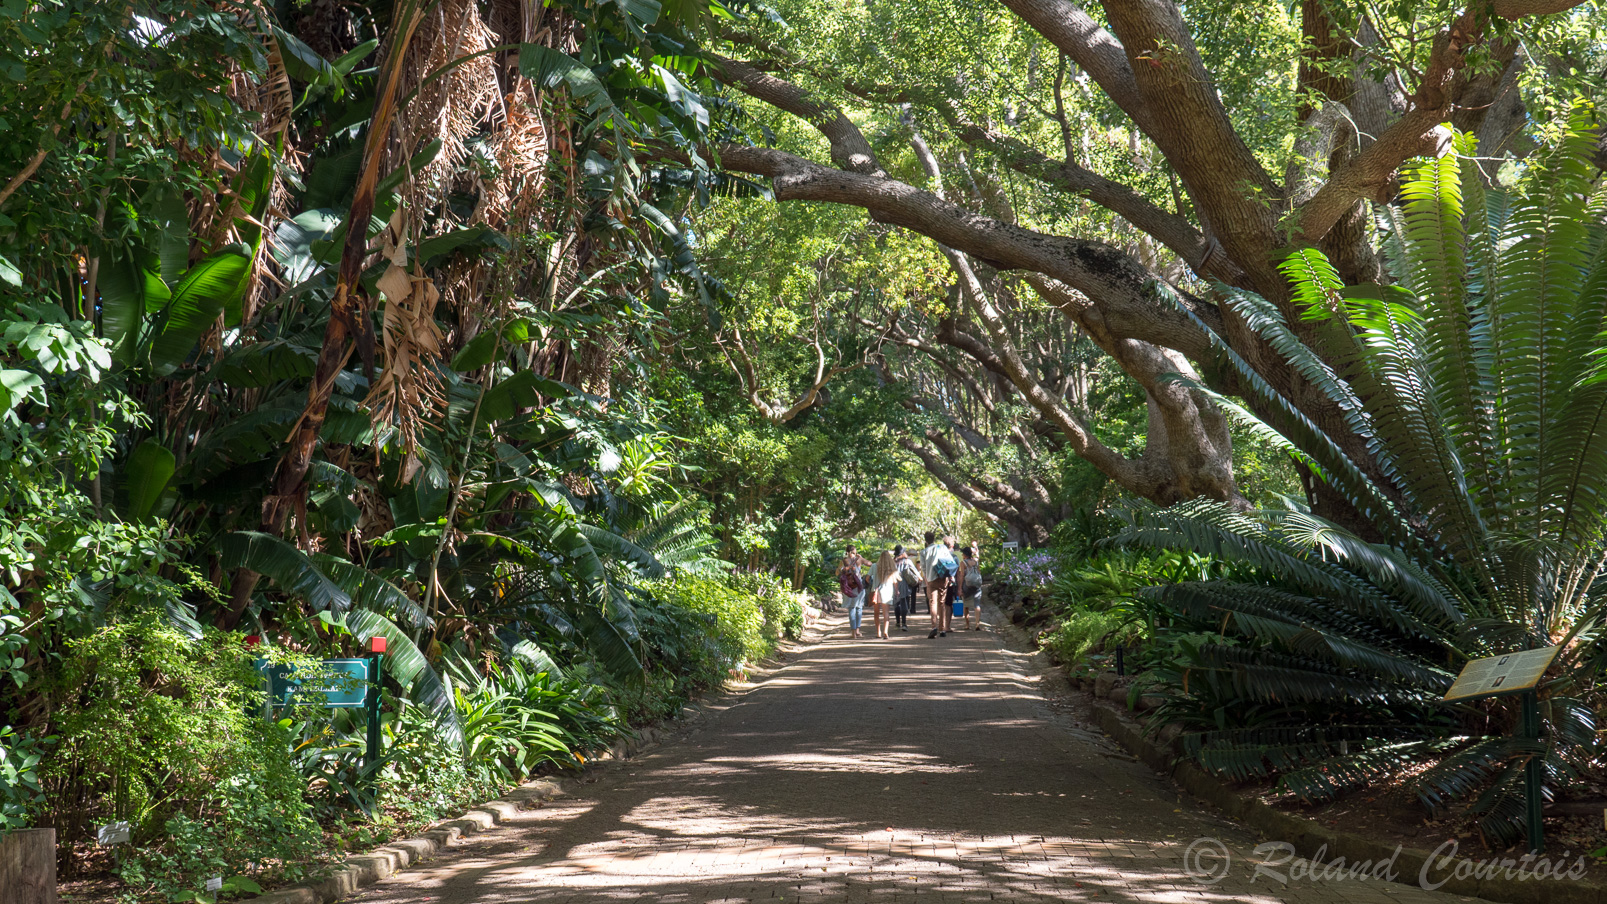 Le Jardin Botanique de Kirstenbosch s’étend sur plus de 560 hectares sur le versant oriental de la Montagne de la Table.